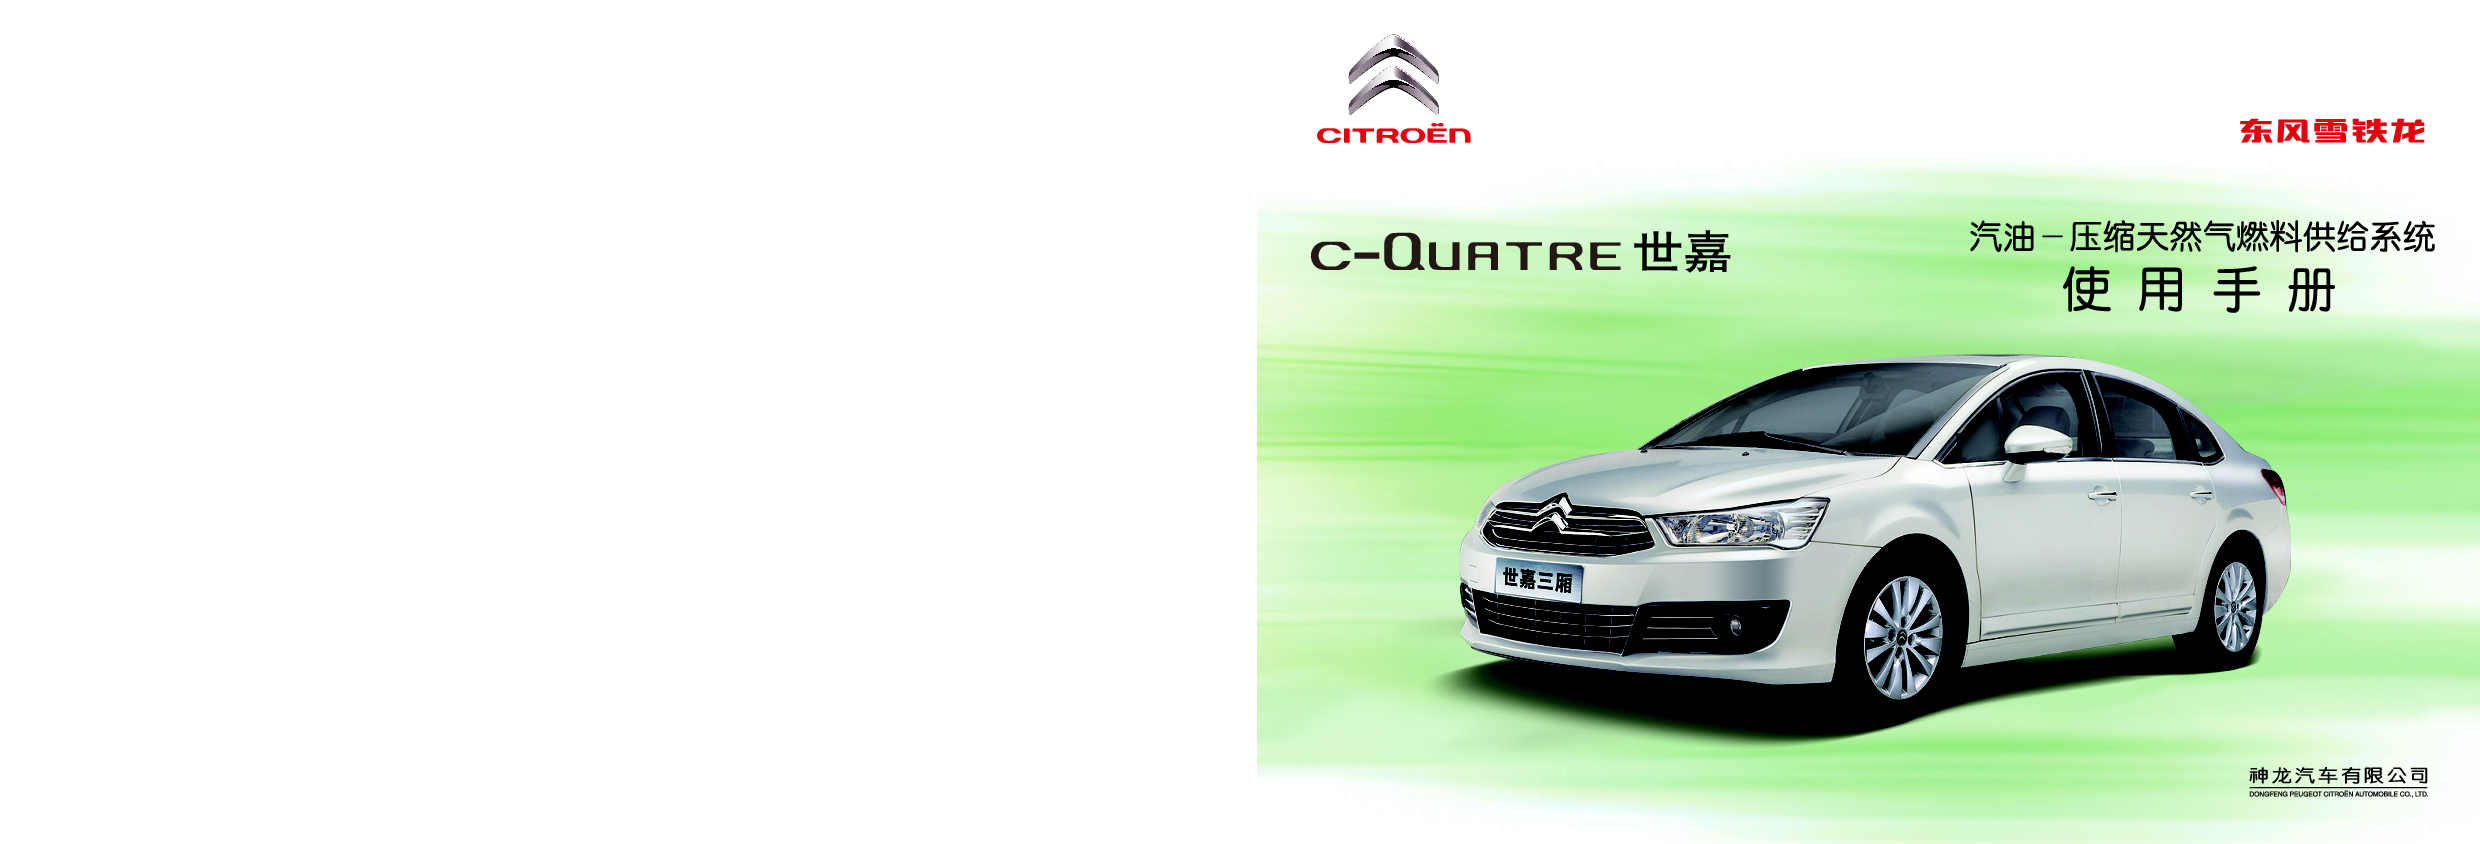 雪铁龙 Citroen C-QUATRE 世嘉混合 2013 用户手册 封面